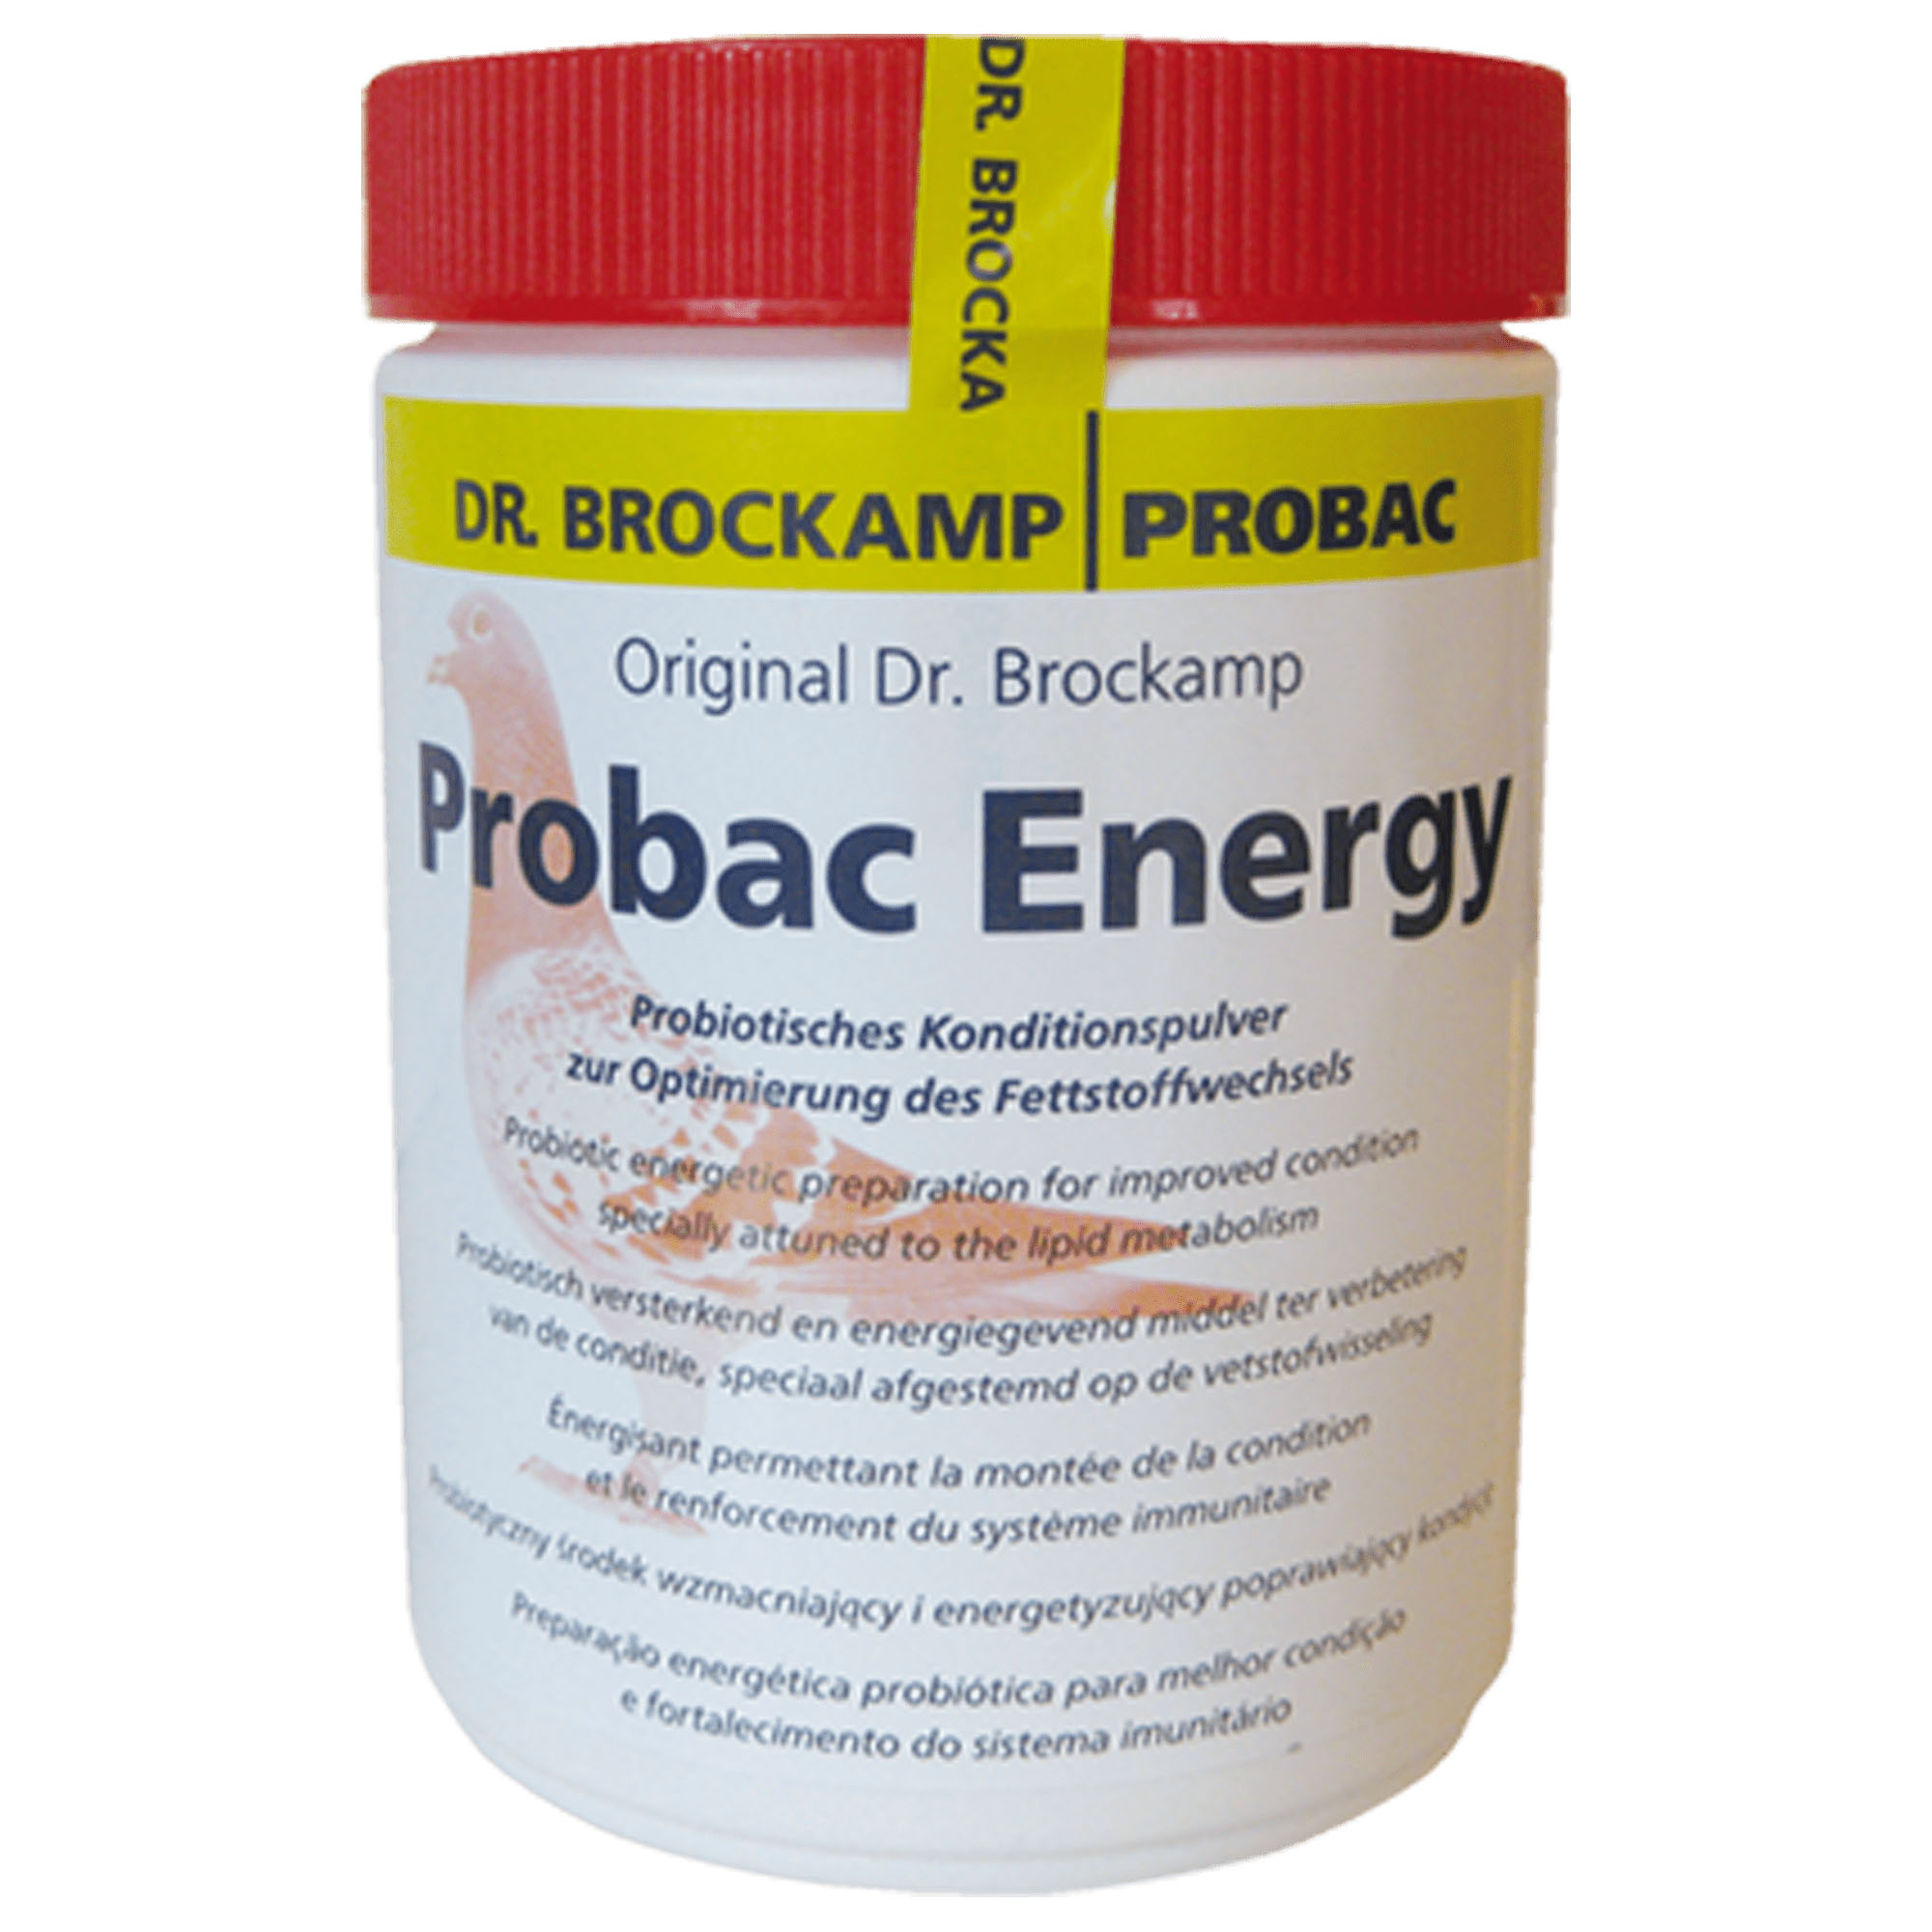 probac-energy